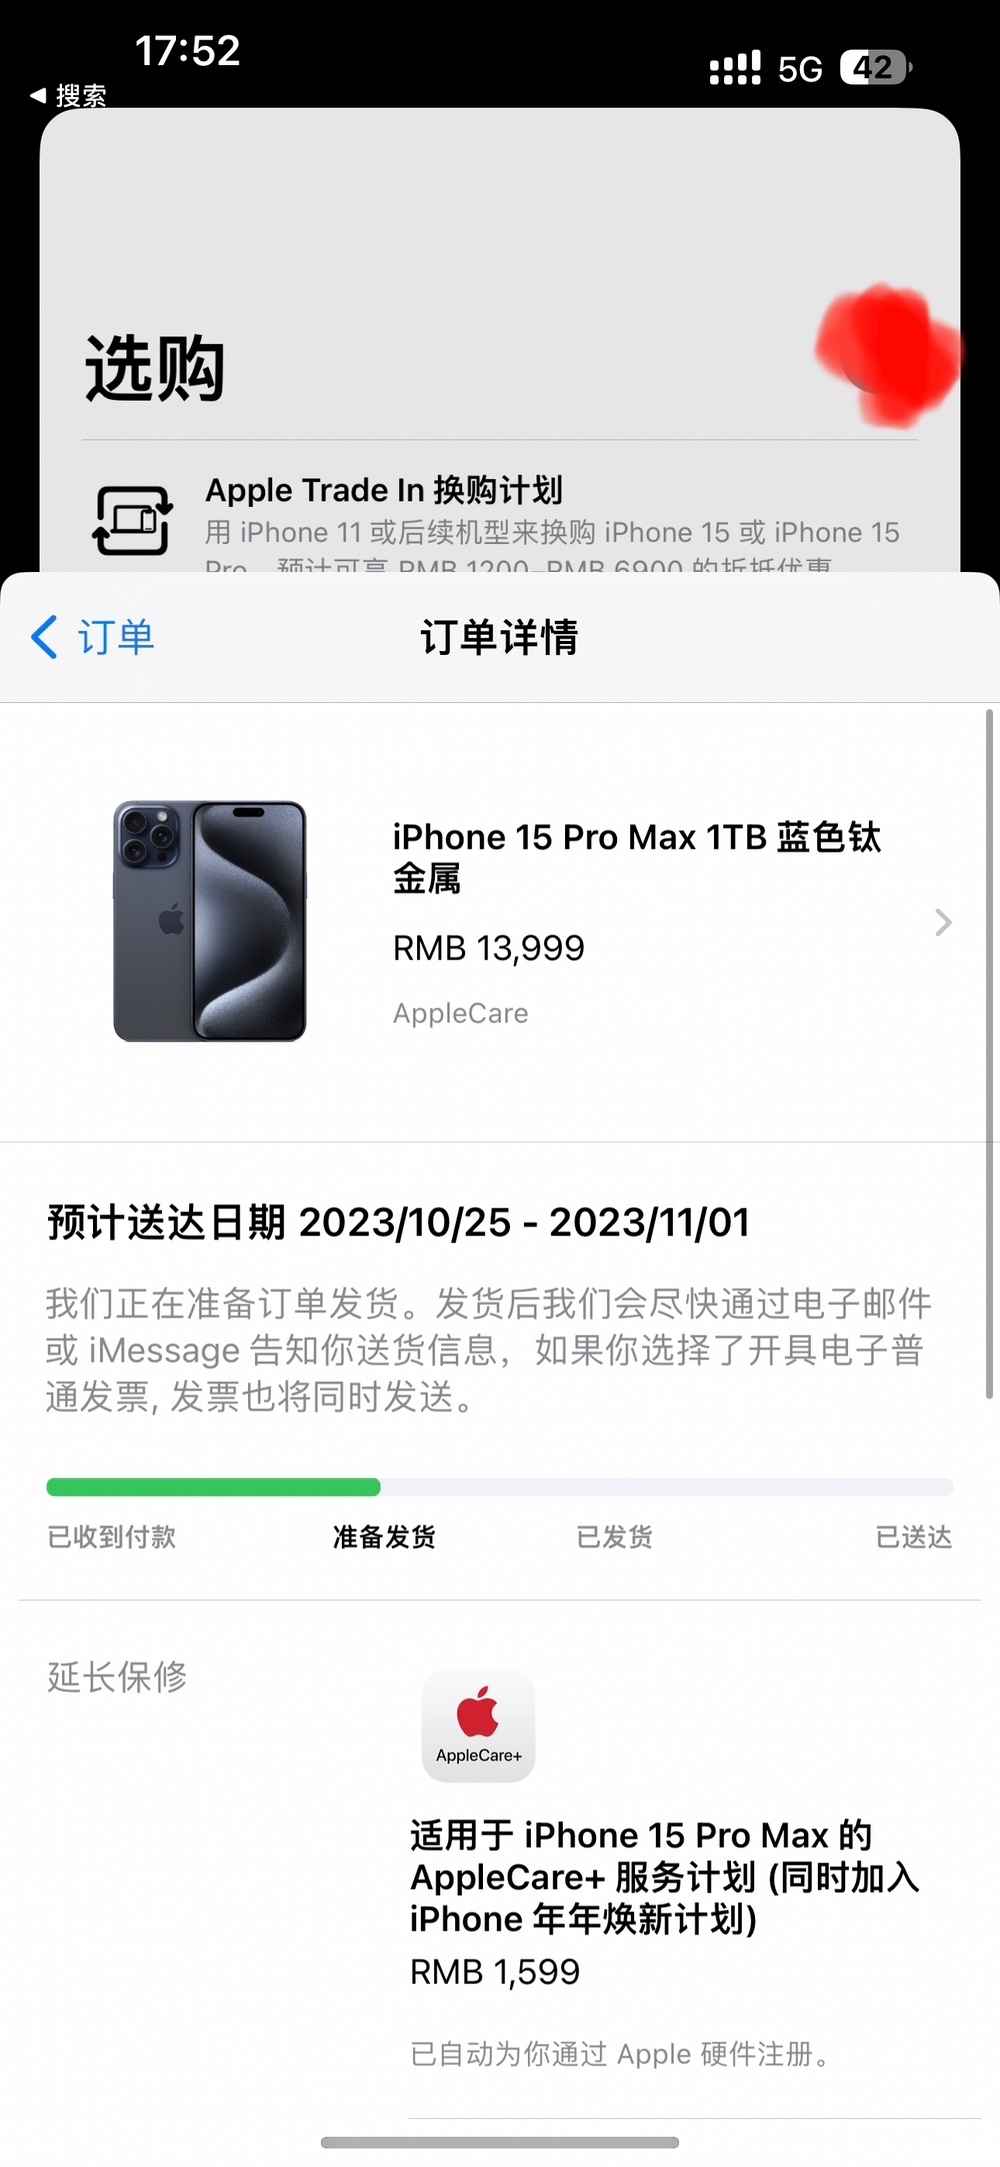 哇 Iphone15 pro max1T蓝钛金子版要发货啦